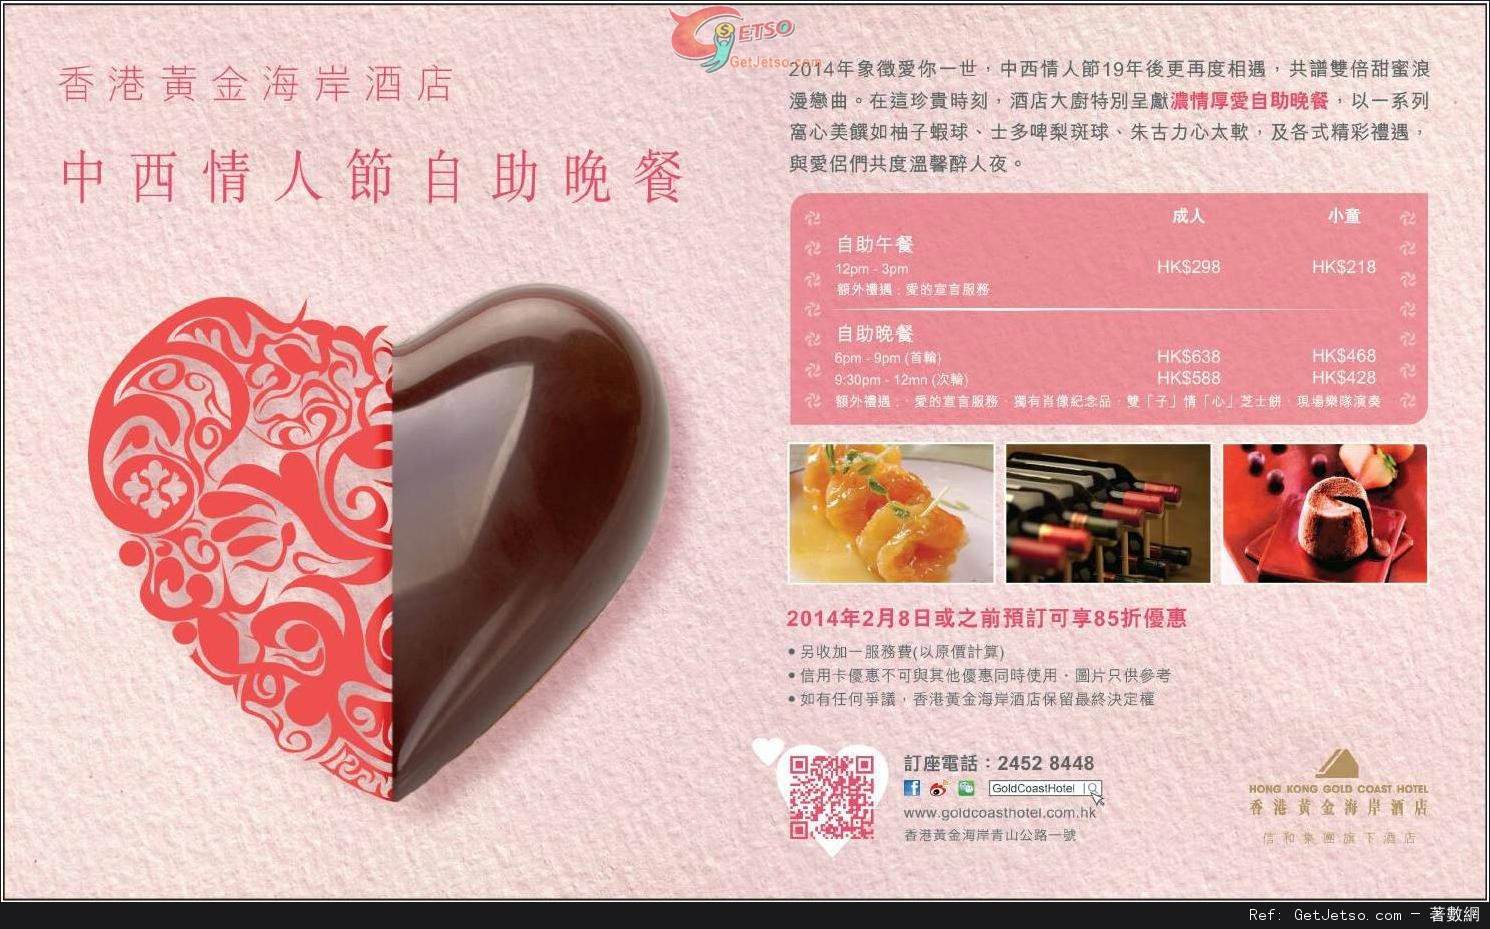 香港黃金海岸酒店雙情人節自助餐85折預訂優惠(至14年2月8日)圖片1